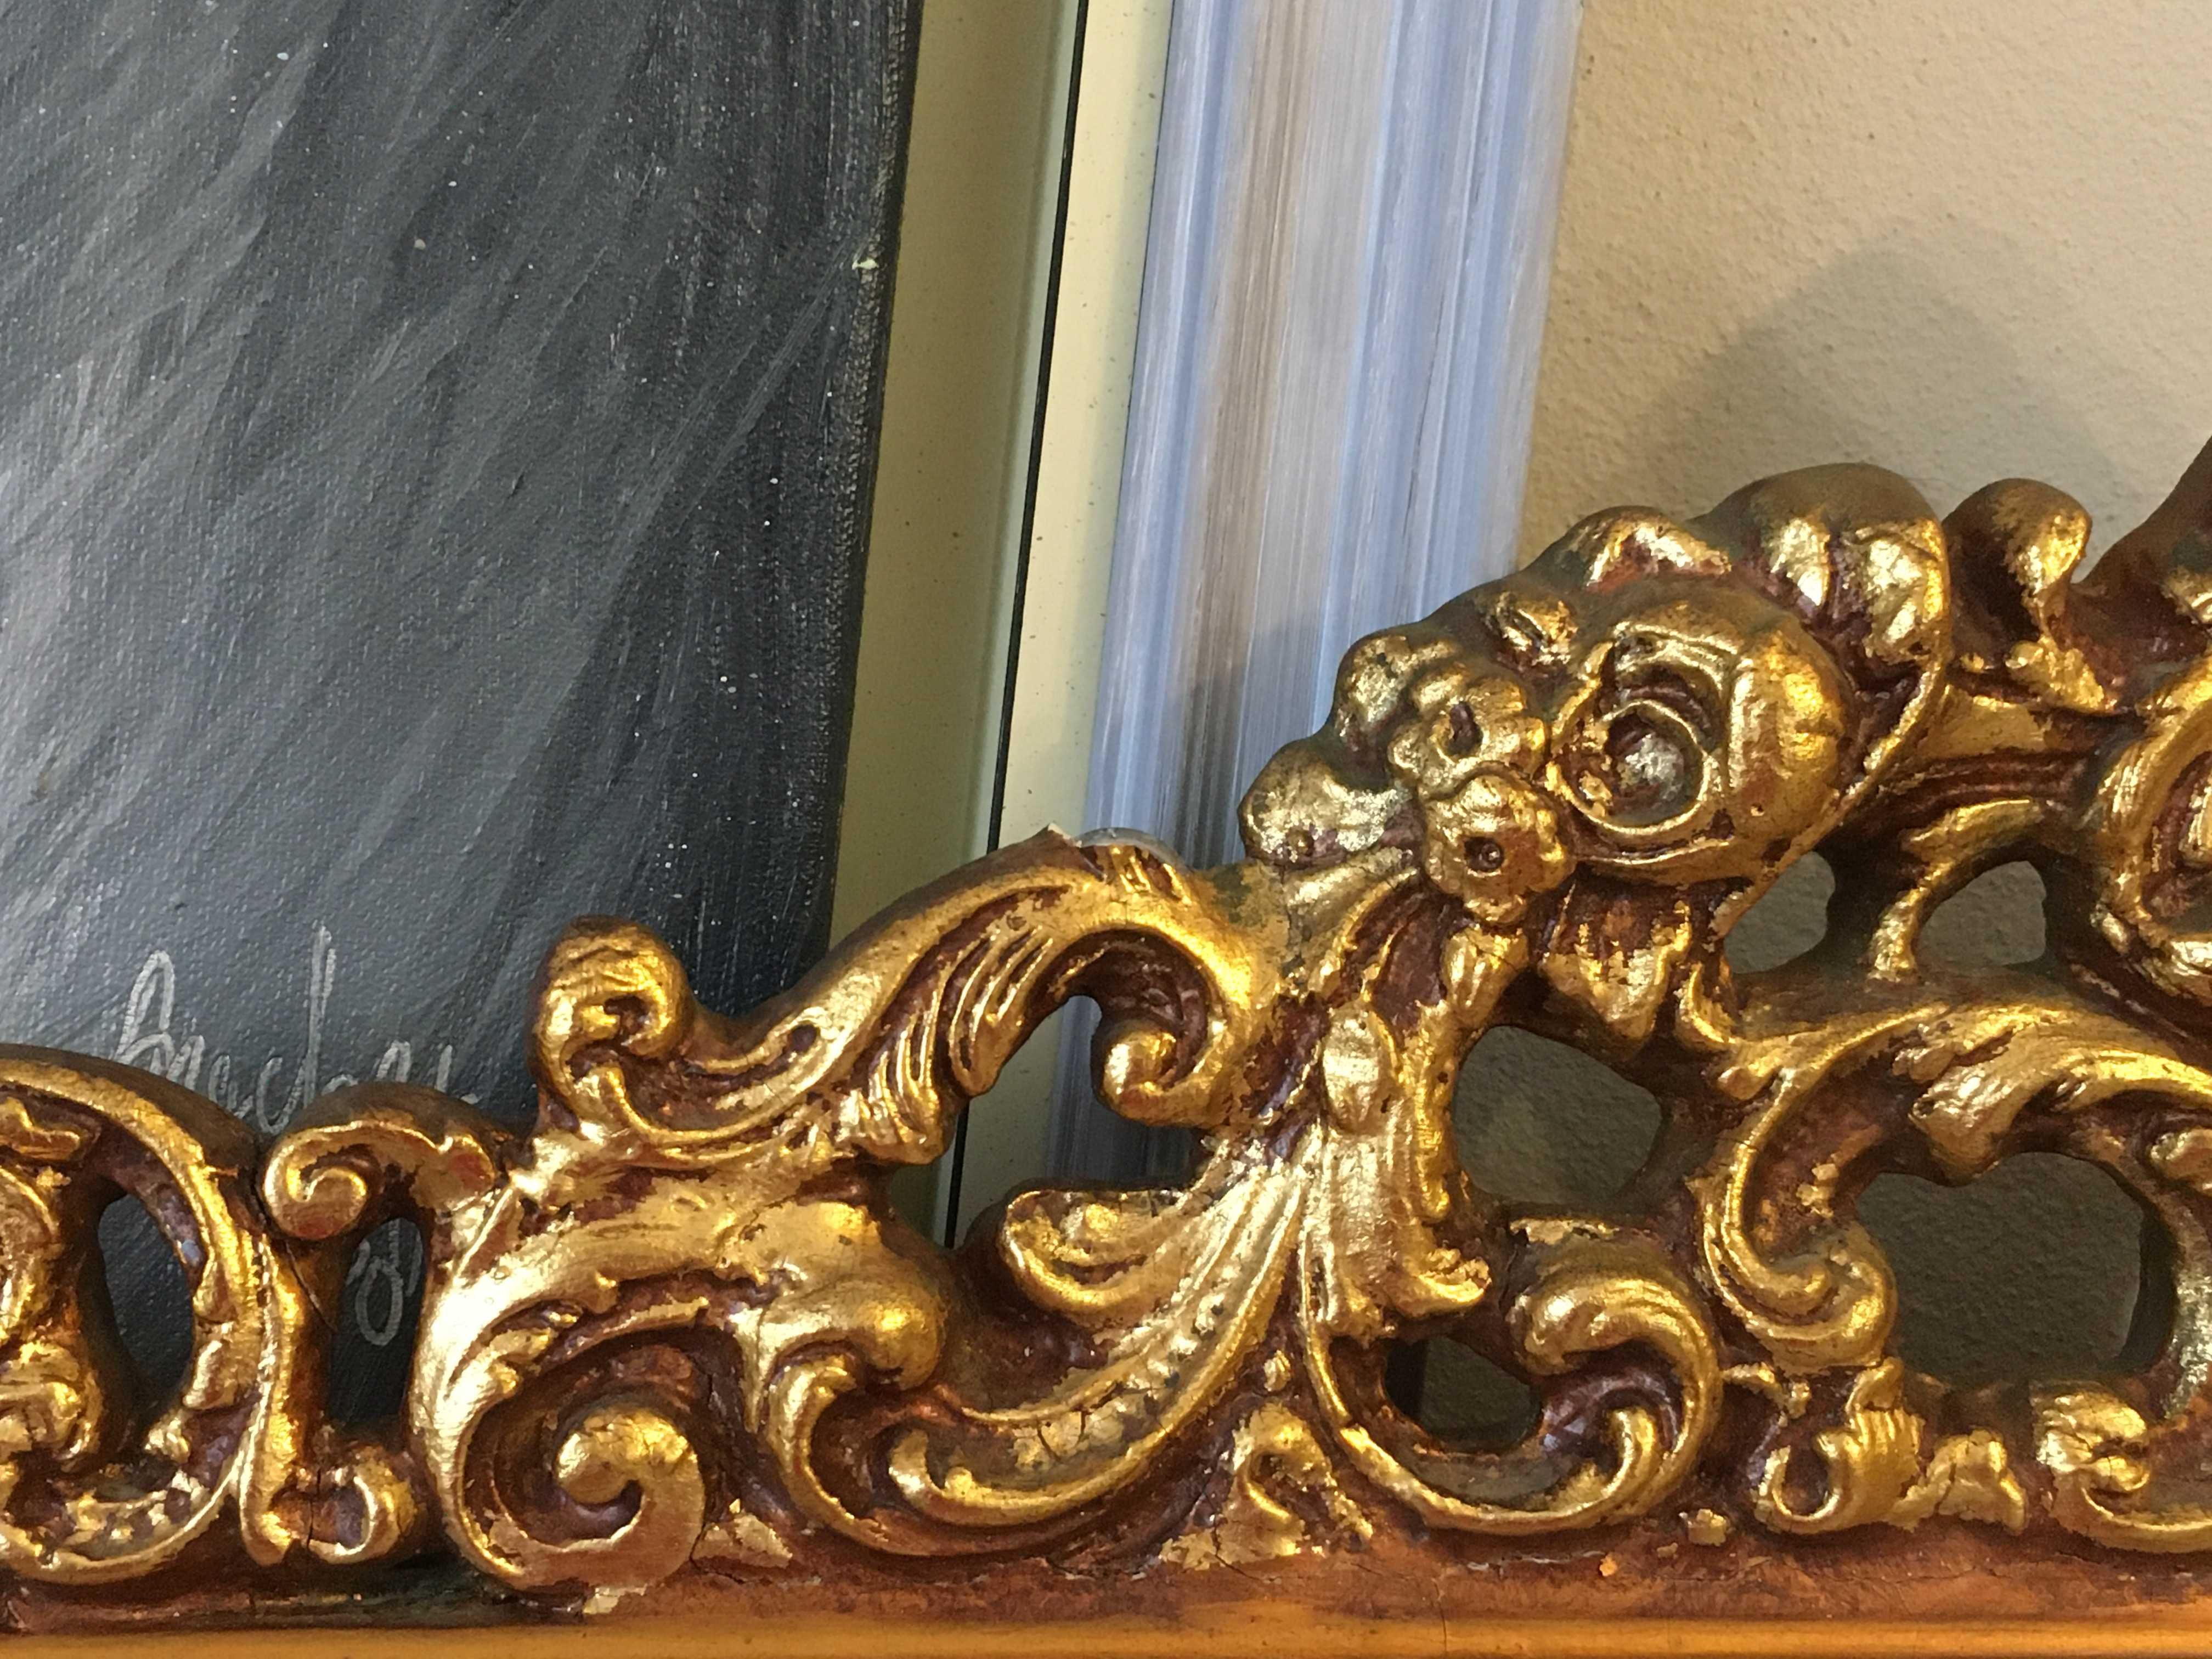 Belo espelho antigo, moldura dourada ricamente trabalhada